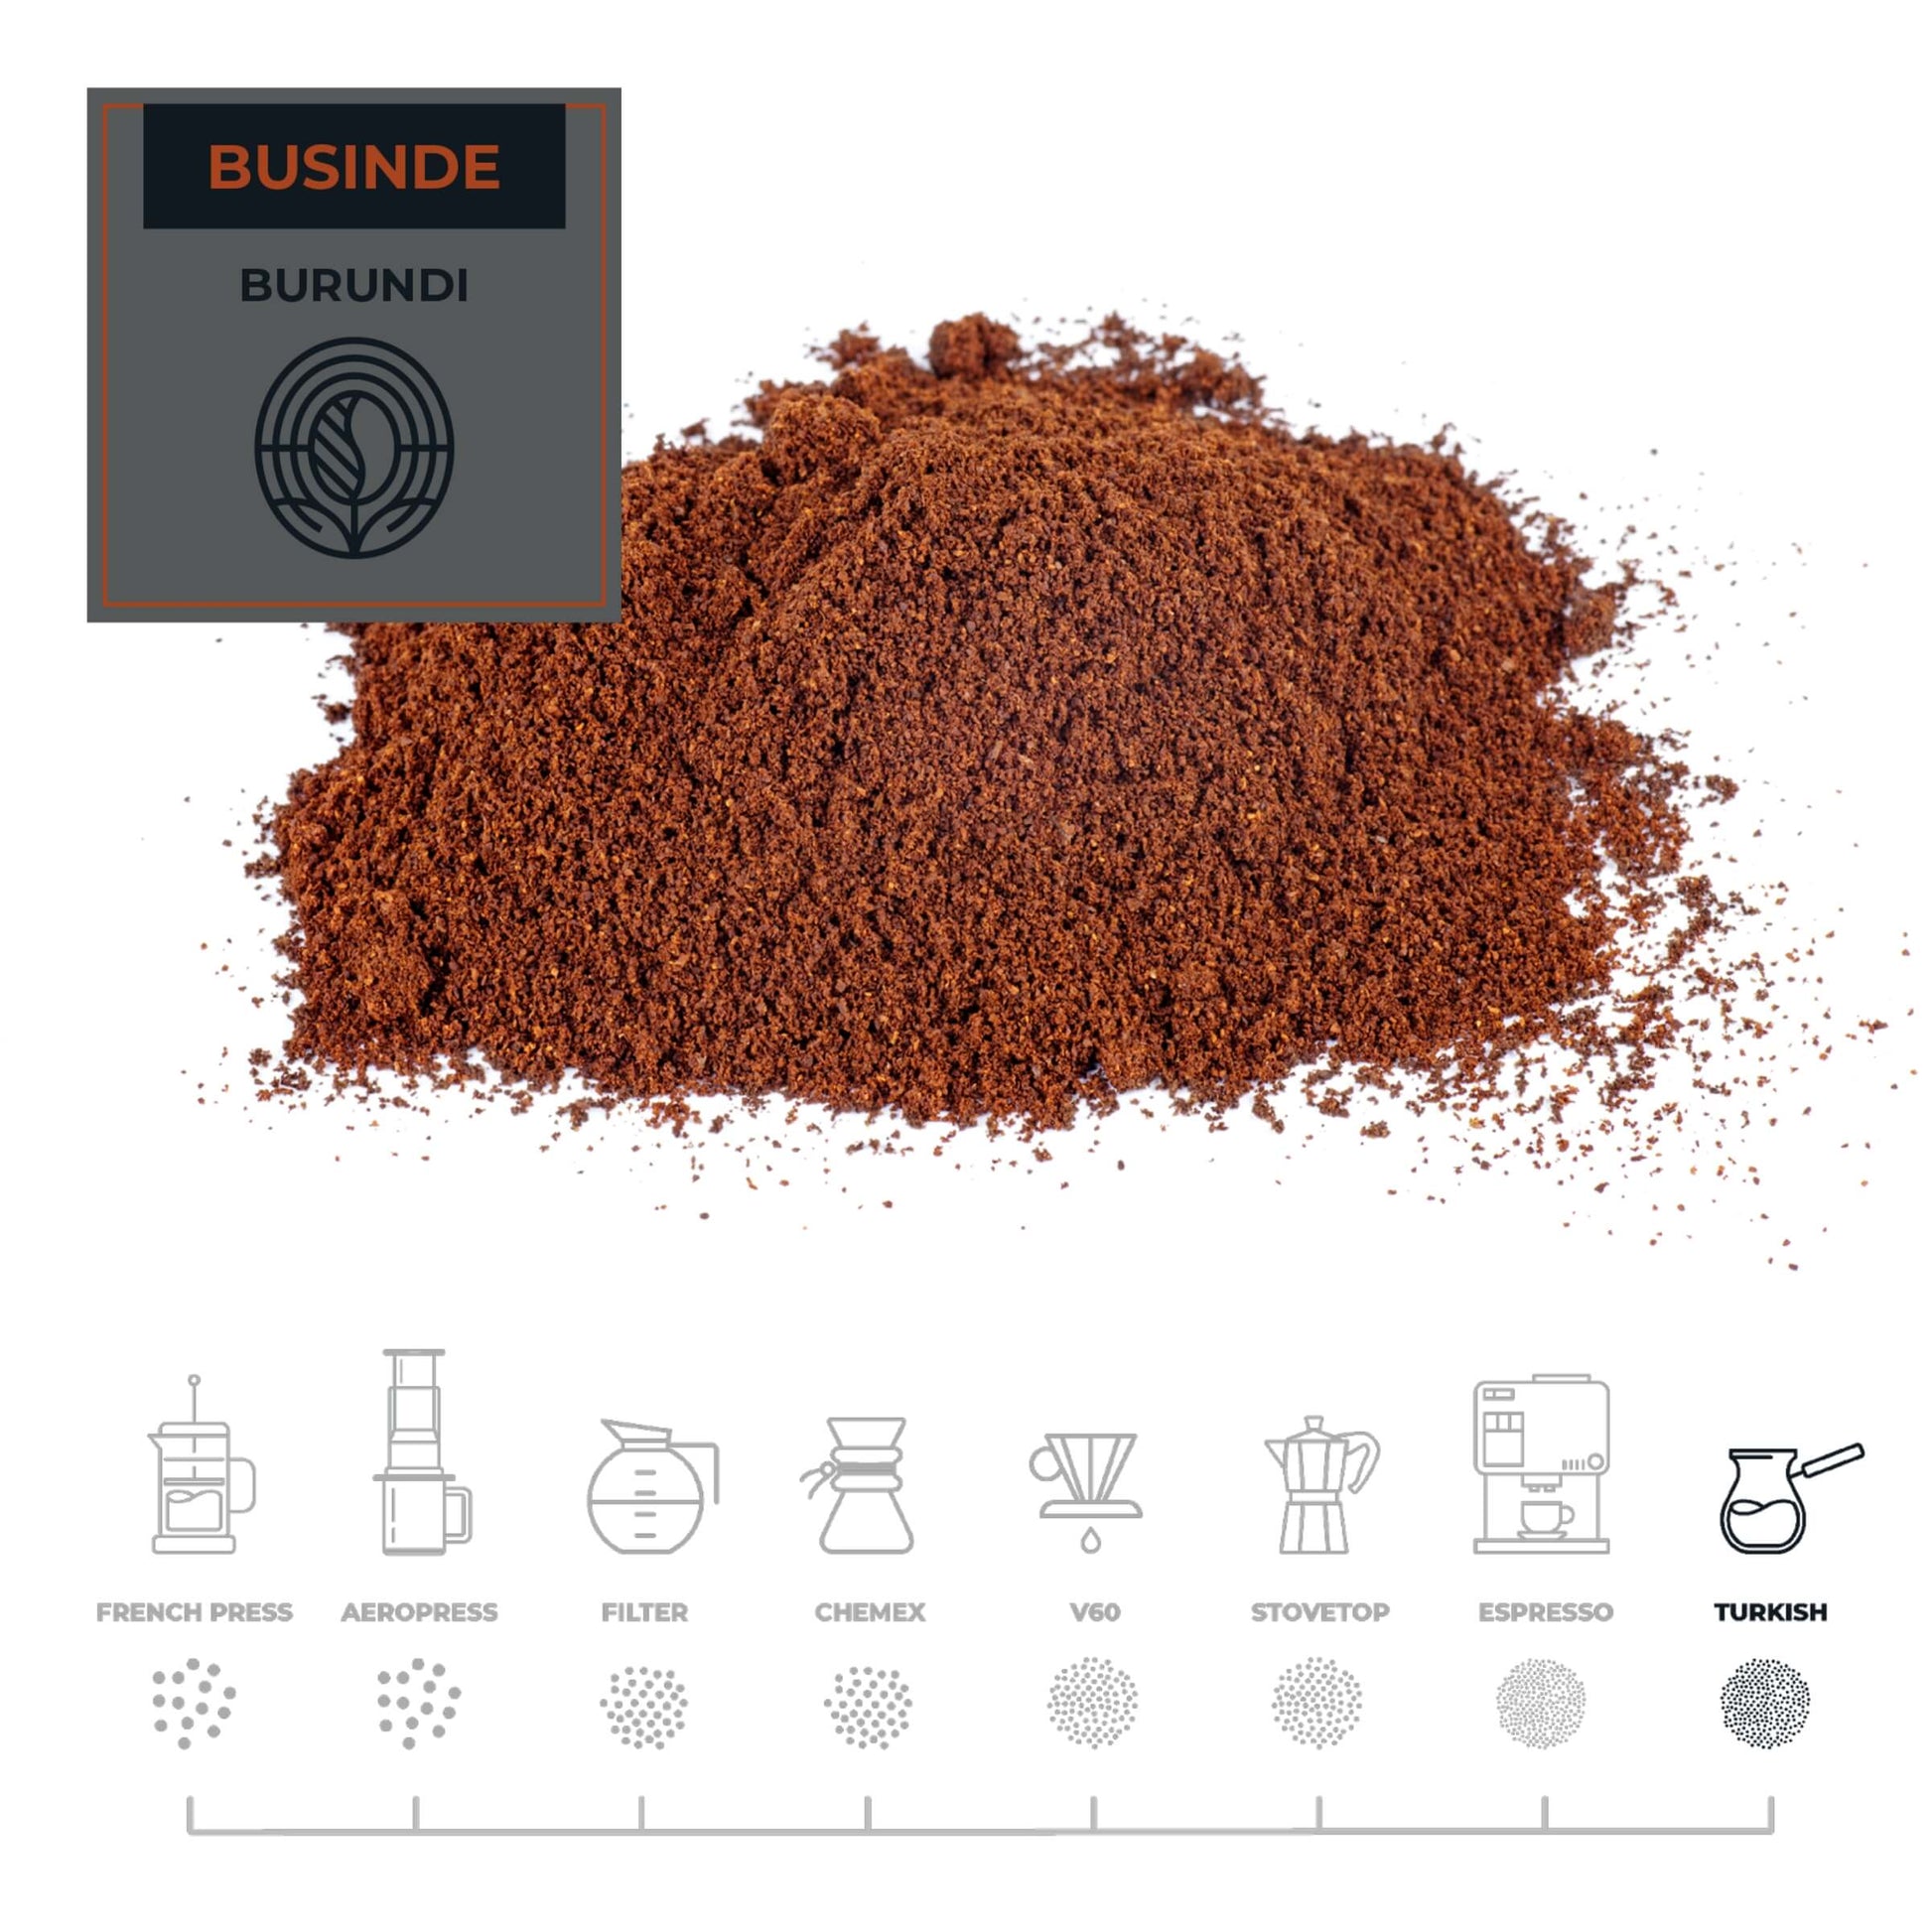 Burundi-Businde-Coffee-Turkish_RAW-Coffee-Company